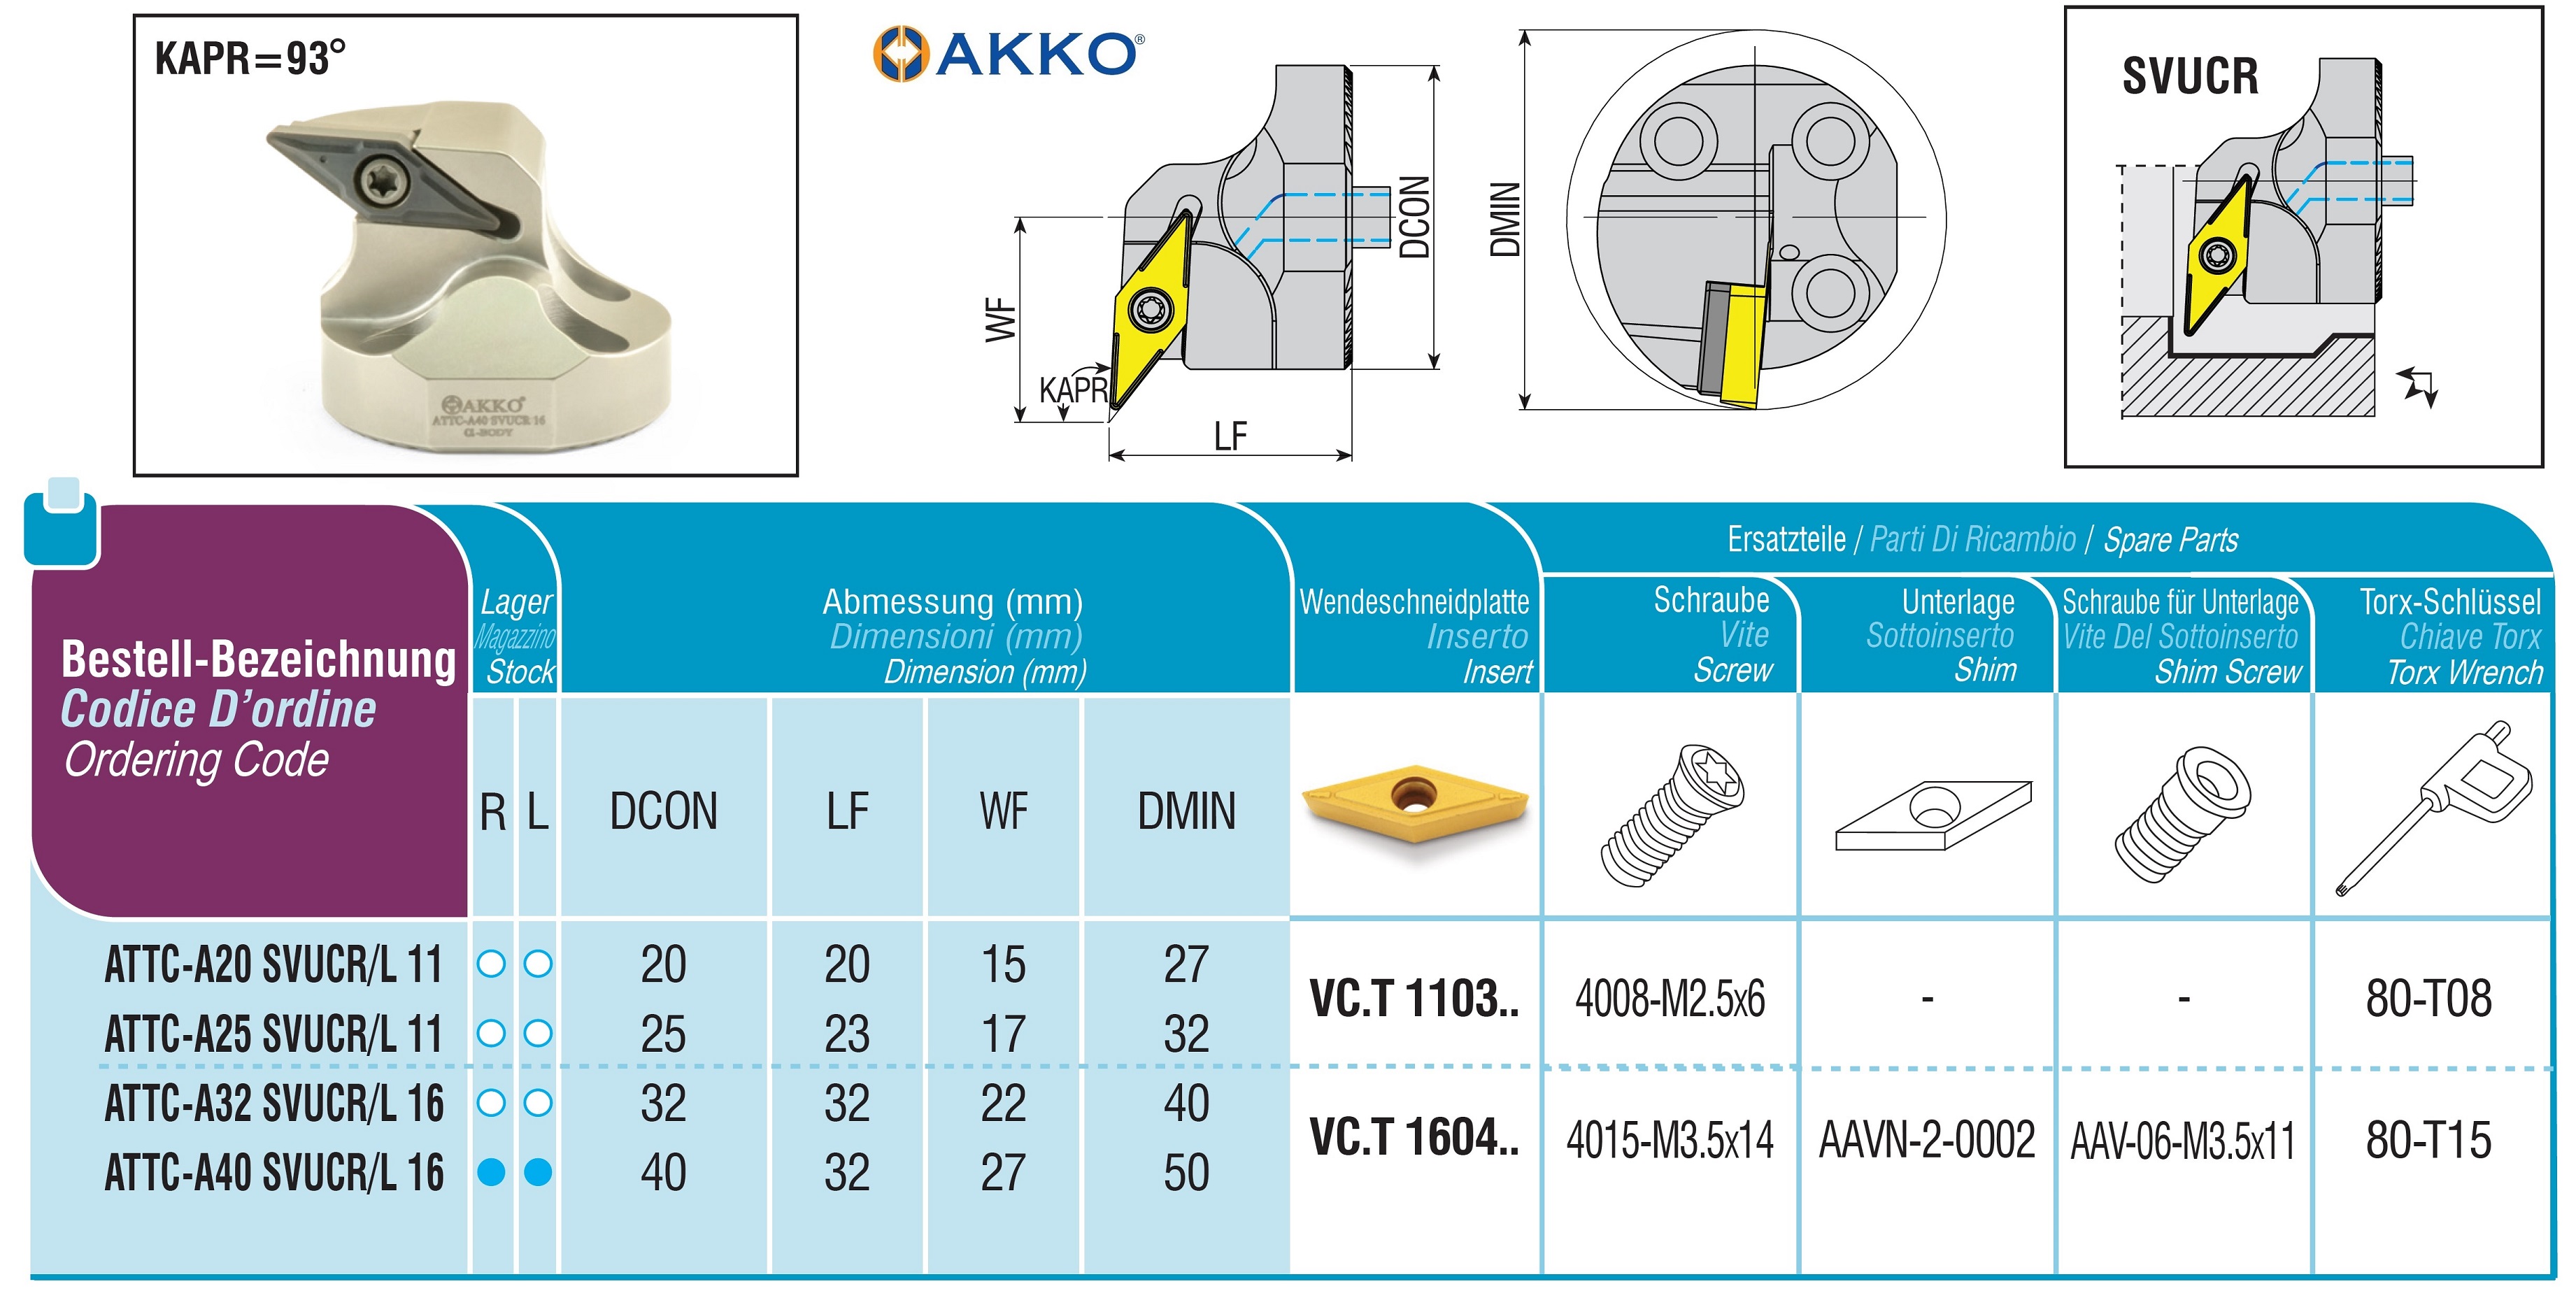 AKKO-Wechselkopf für schwingungsgedämpfte Bohrstange, ø = 40 mm, für Wendeplatte VC.T 1604.., mit Innenkühlung, für eine hohe Oberflächenqualität bei großer Auskraglänge, rechte Ausführung
